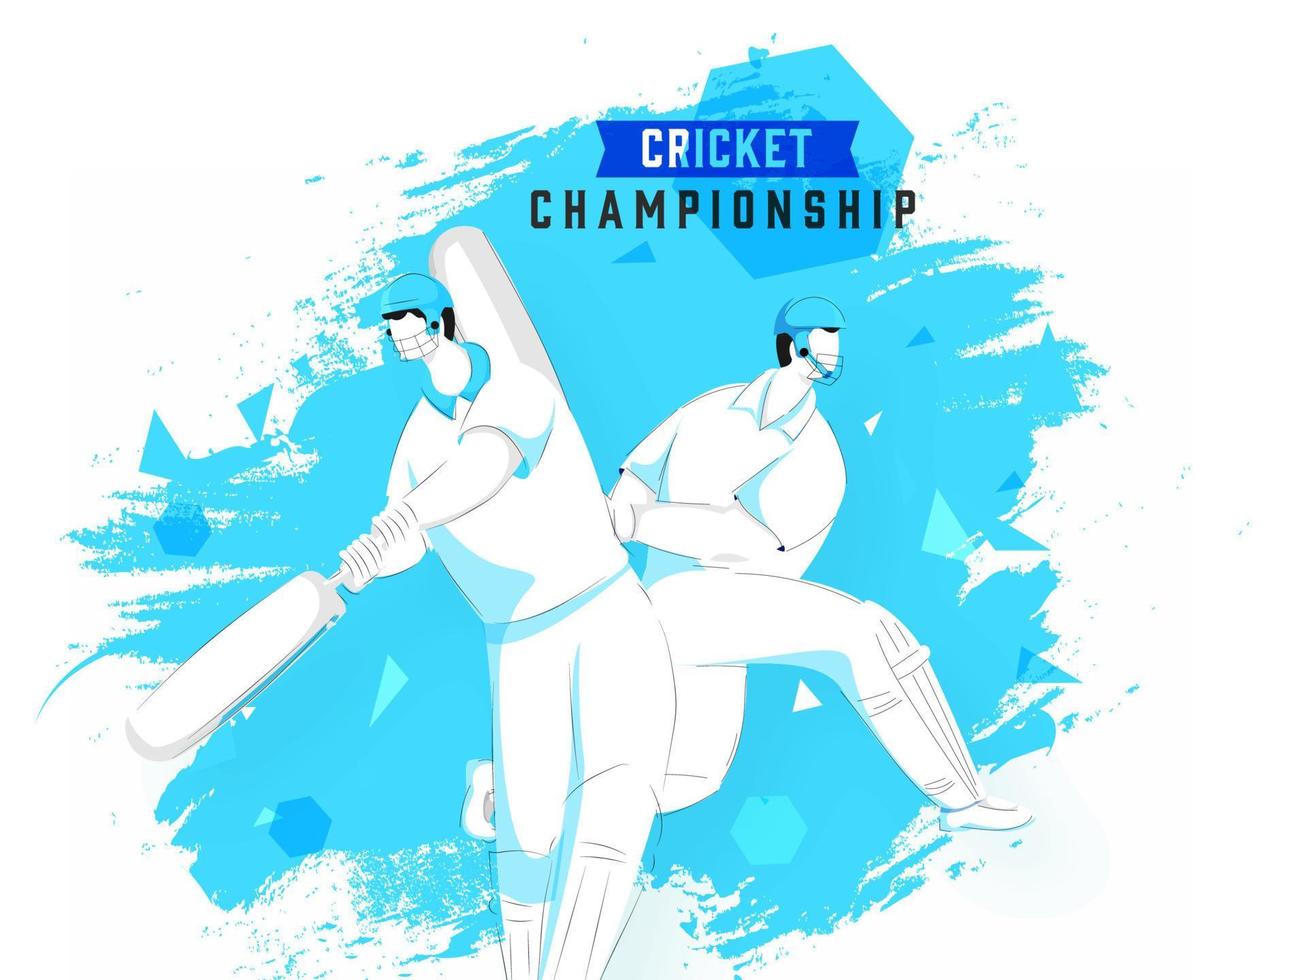 vektor illustration av två slagman karaktär i spelar utgör på vit och blå borsta stroke bakgrund för cricket mästerskap.